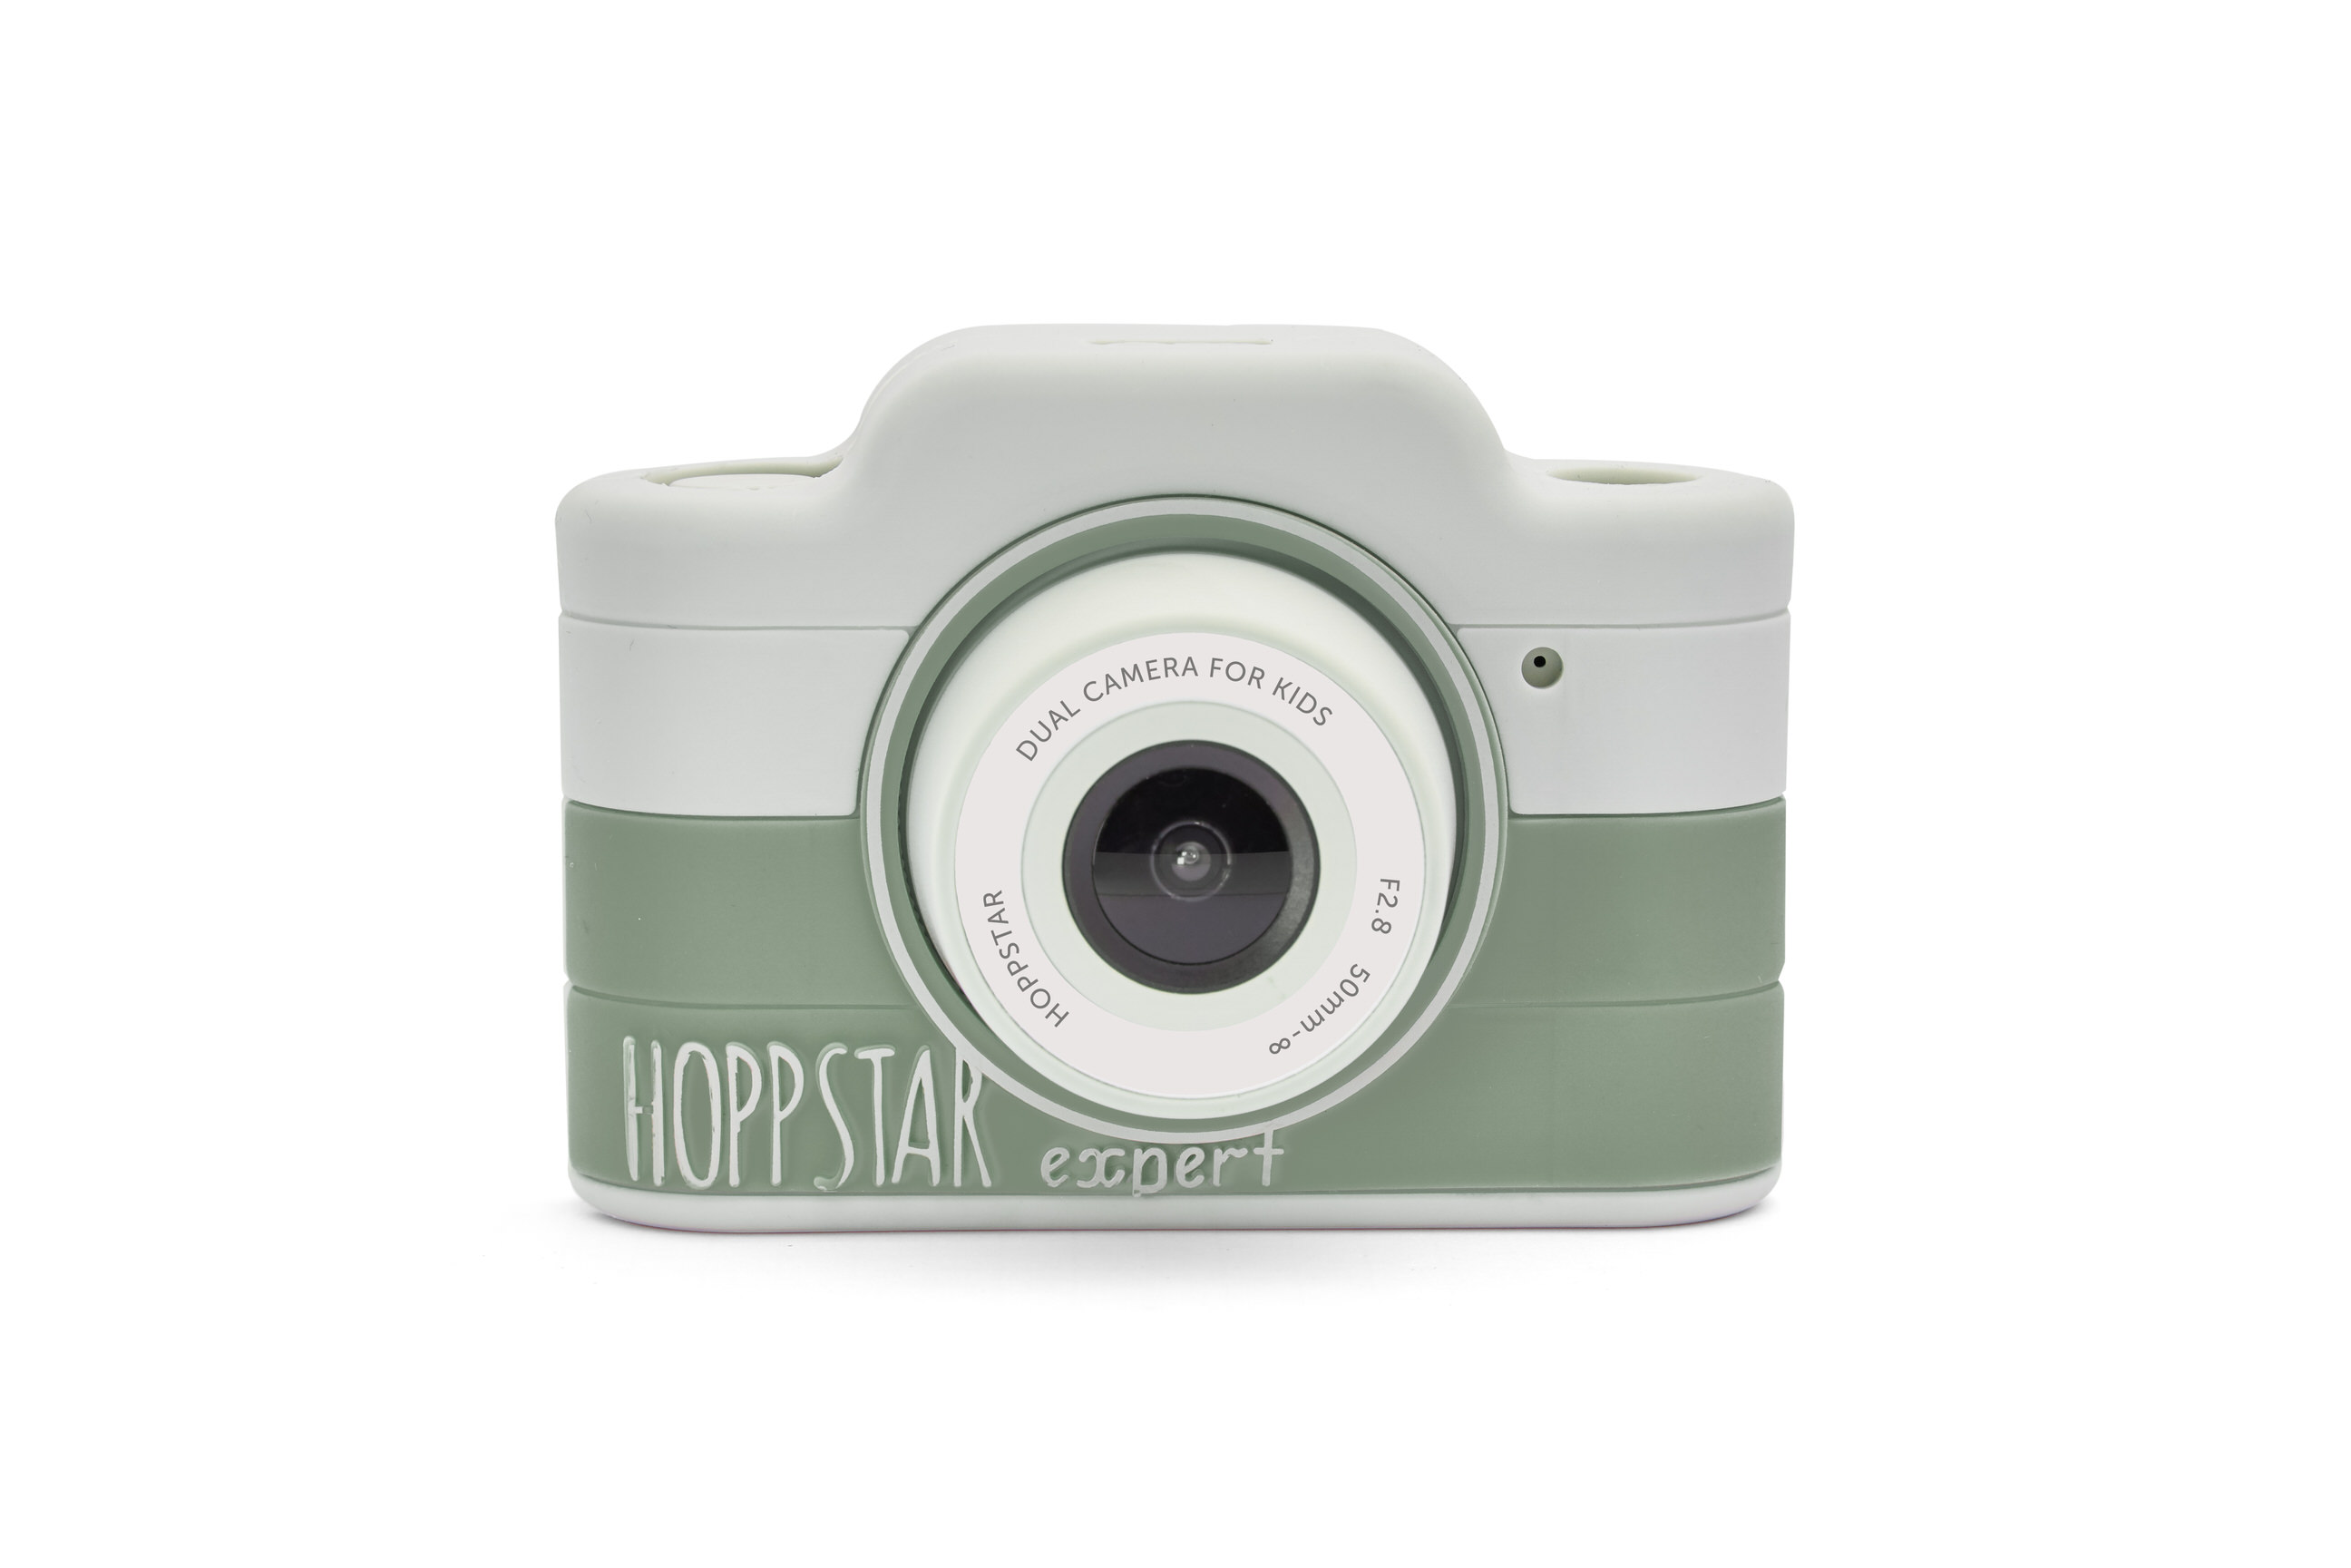 Hoppstar Expert Kamera mit Laurel (grün/weiß) Silikonhülle, Frontalansicht+